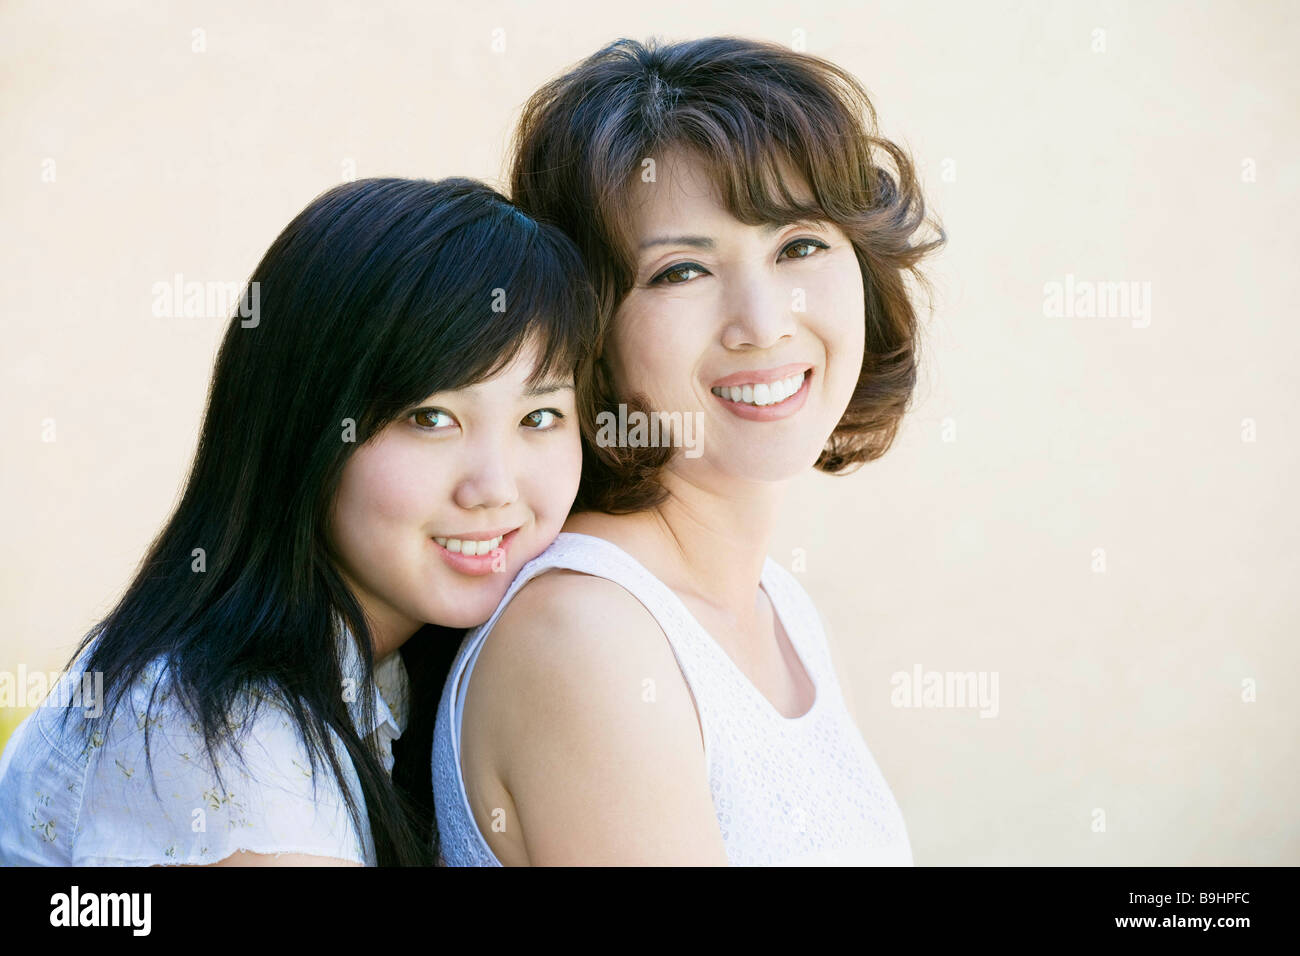 Мама с дочкой япония. Японки мать и дочь красотки. Сразу две улыбки маме. Дочка и мать улыбаются лоб в лоб. Её улыбка мама фото фон.